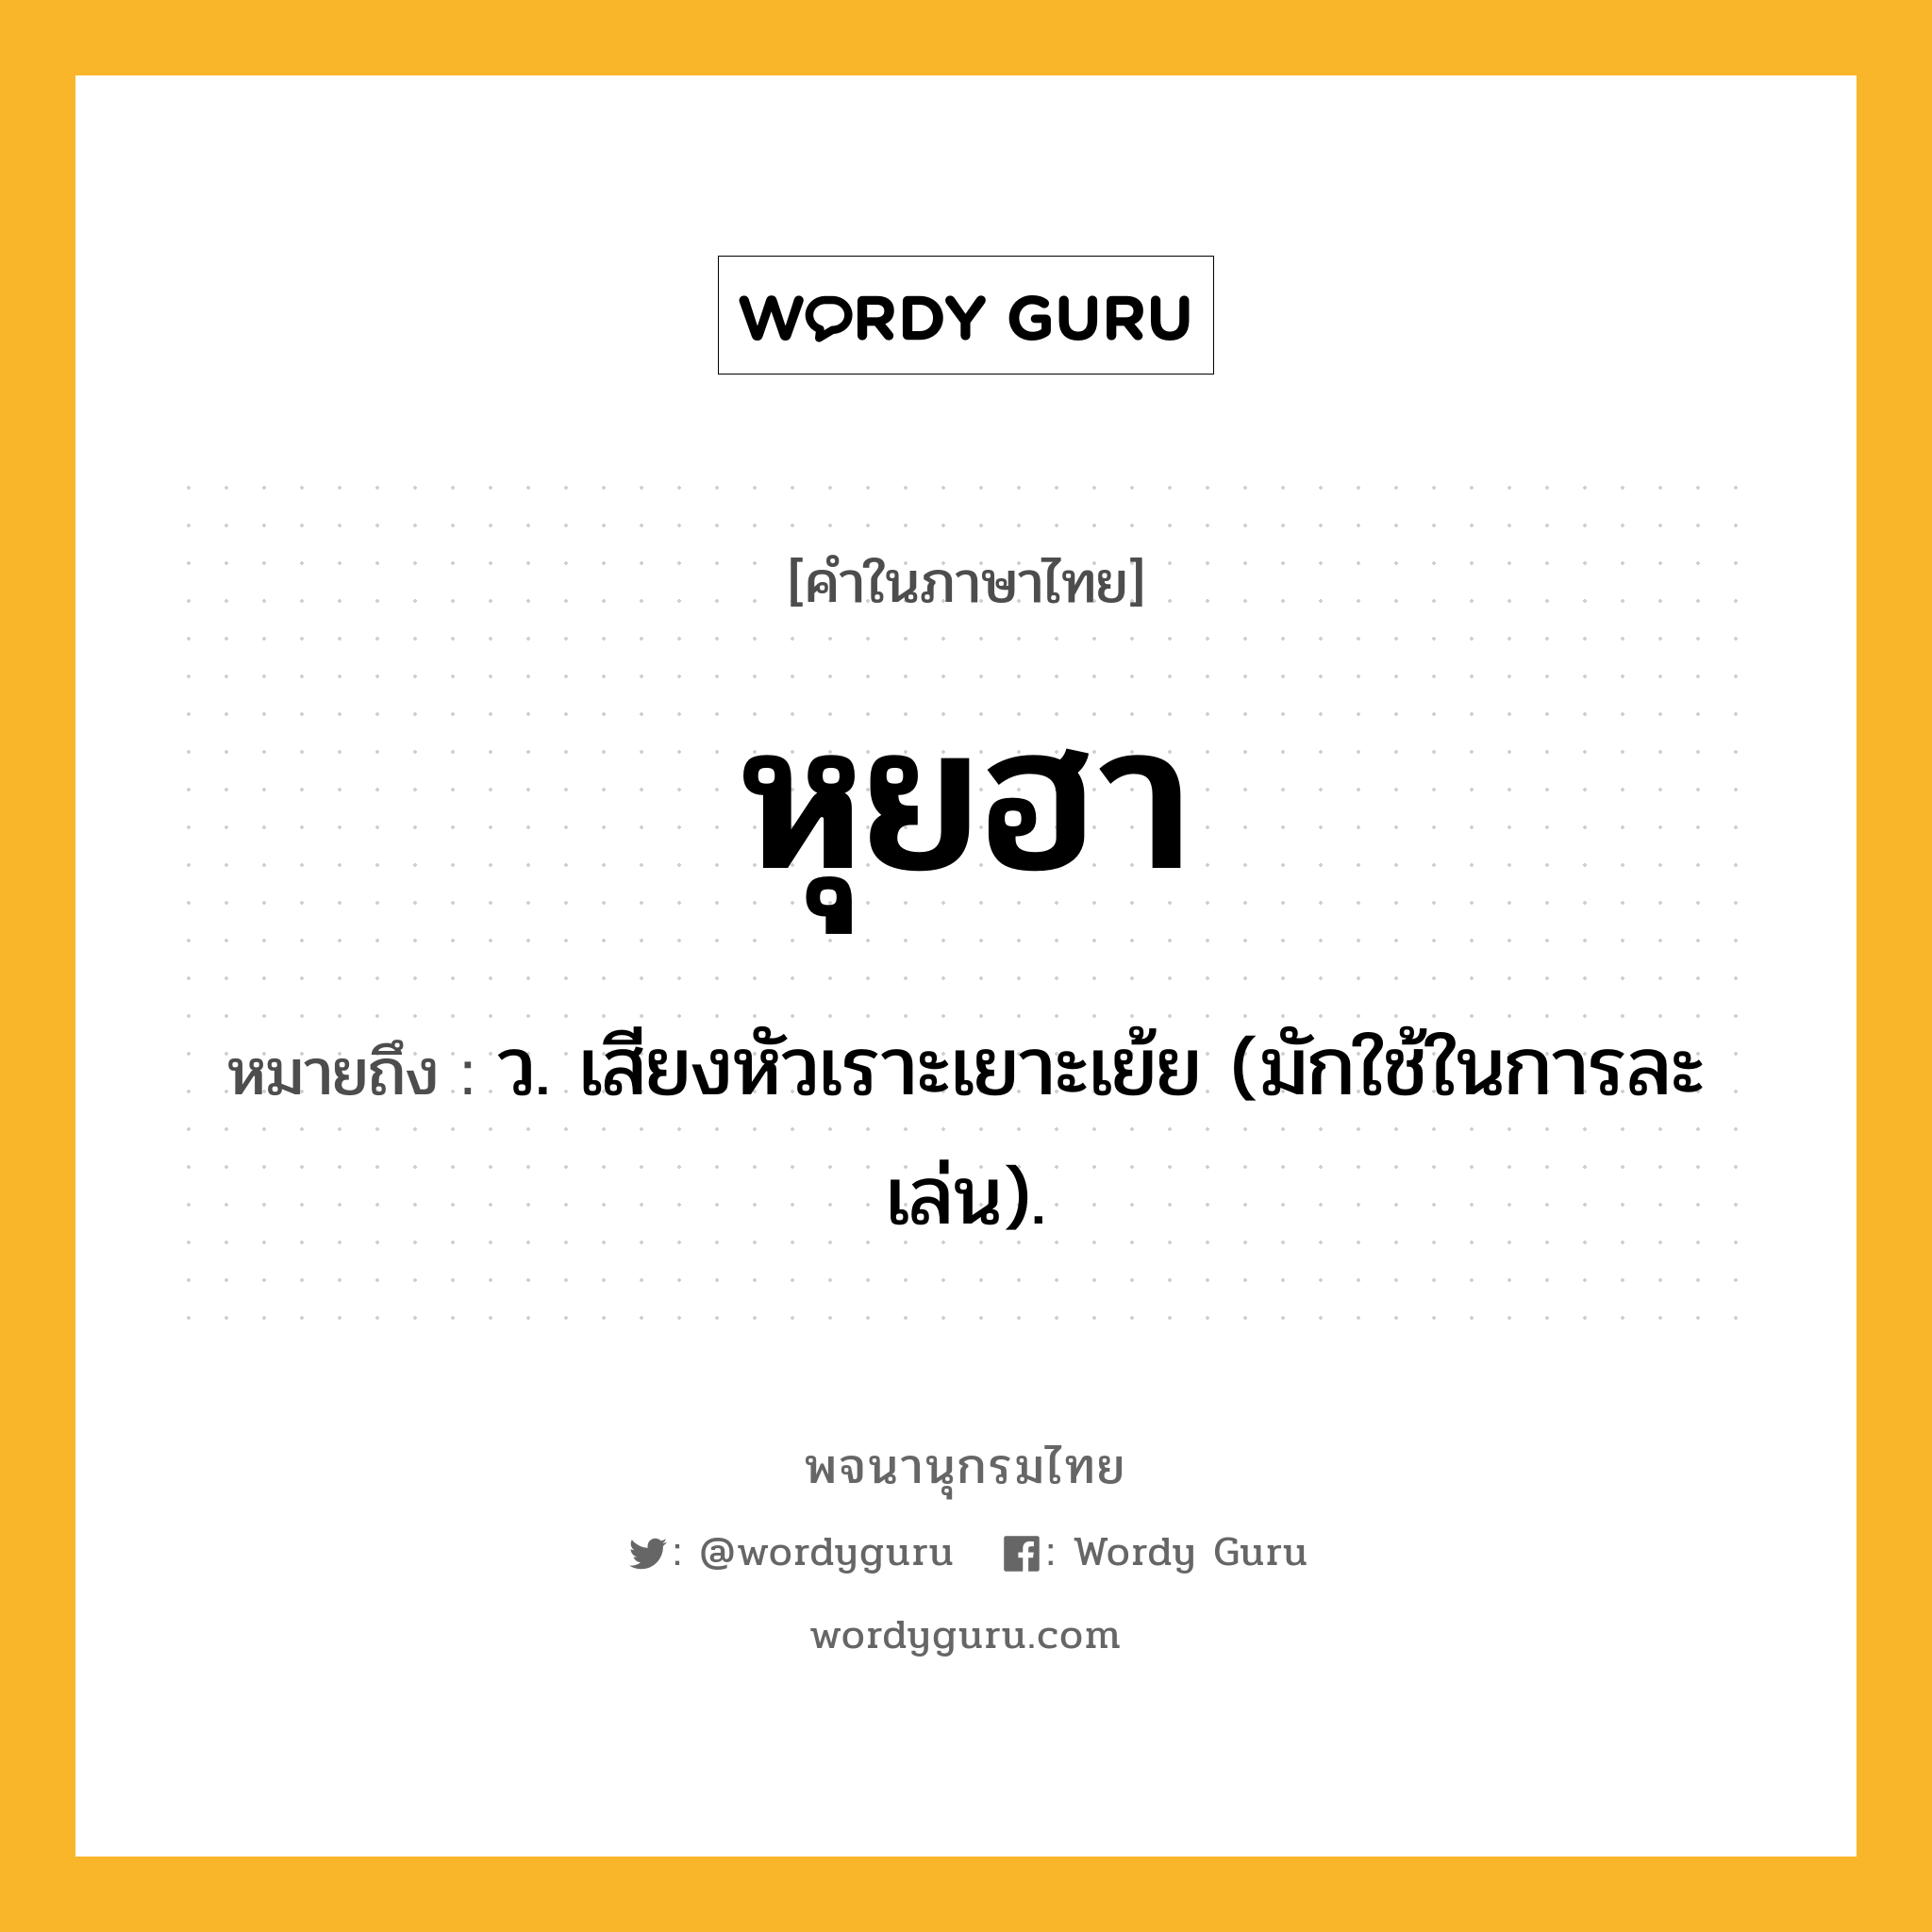 หุยฮา ความหมาย หมายถึงอะไร?, คำในภาษาไทย หุยฮา หมายถึง ว. เสียงหัวเราะเยาะเย้ย (มักใช้ในการละเล่น).